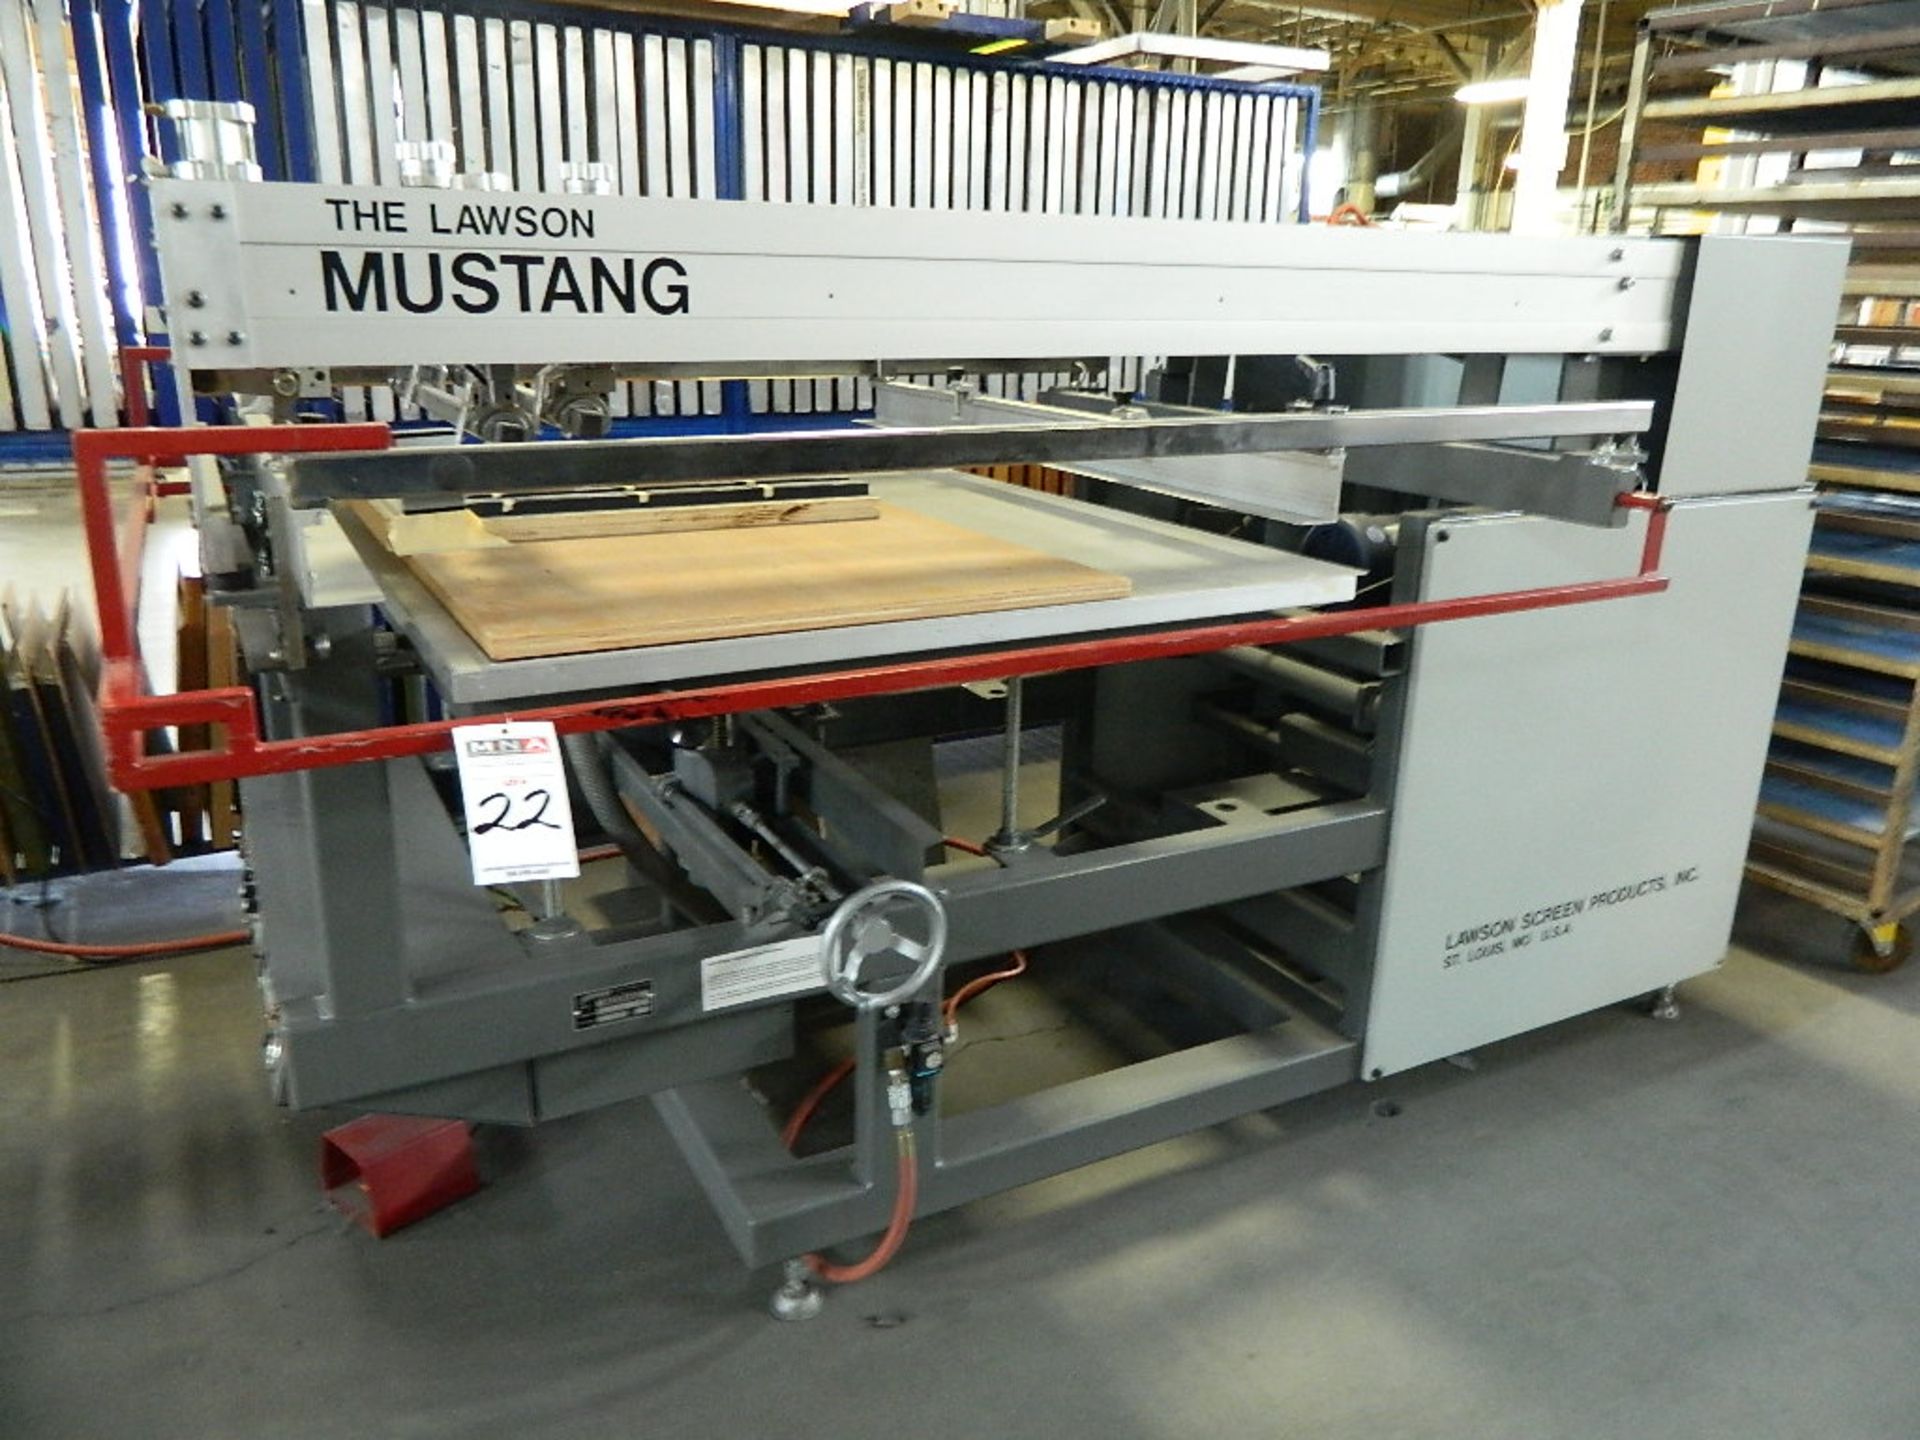 Lawson Mustang Flat Bed Silkscreen Printing Press Mdl 3040, 320"x40" Max Print Area, 18" Min.